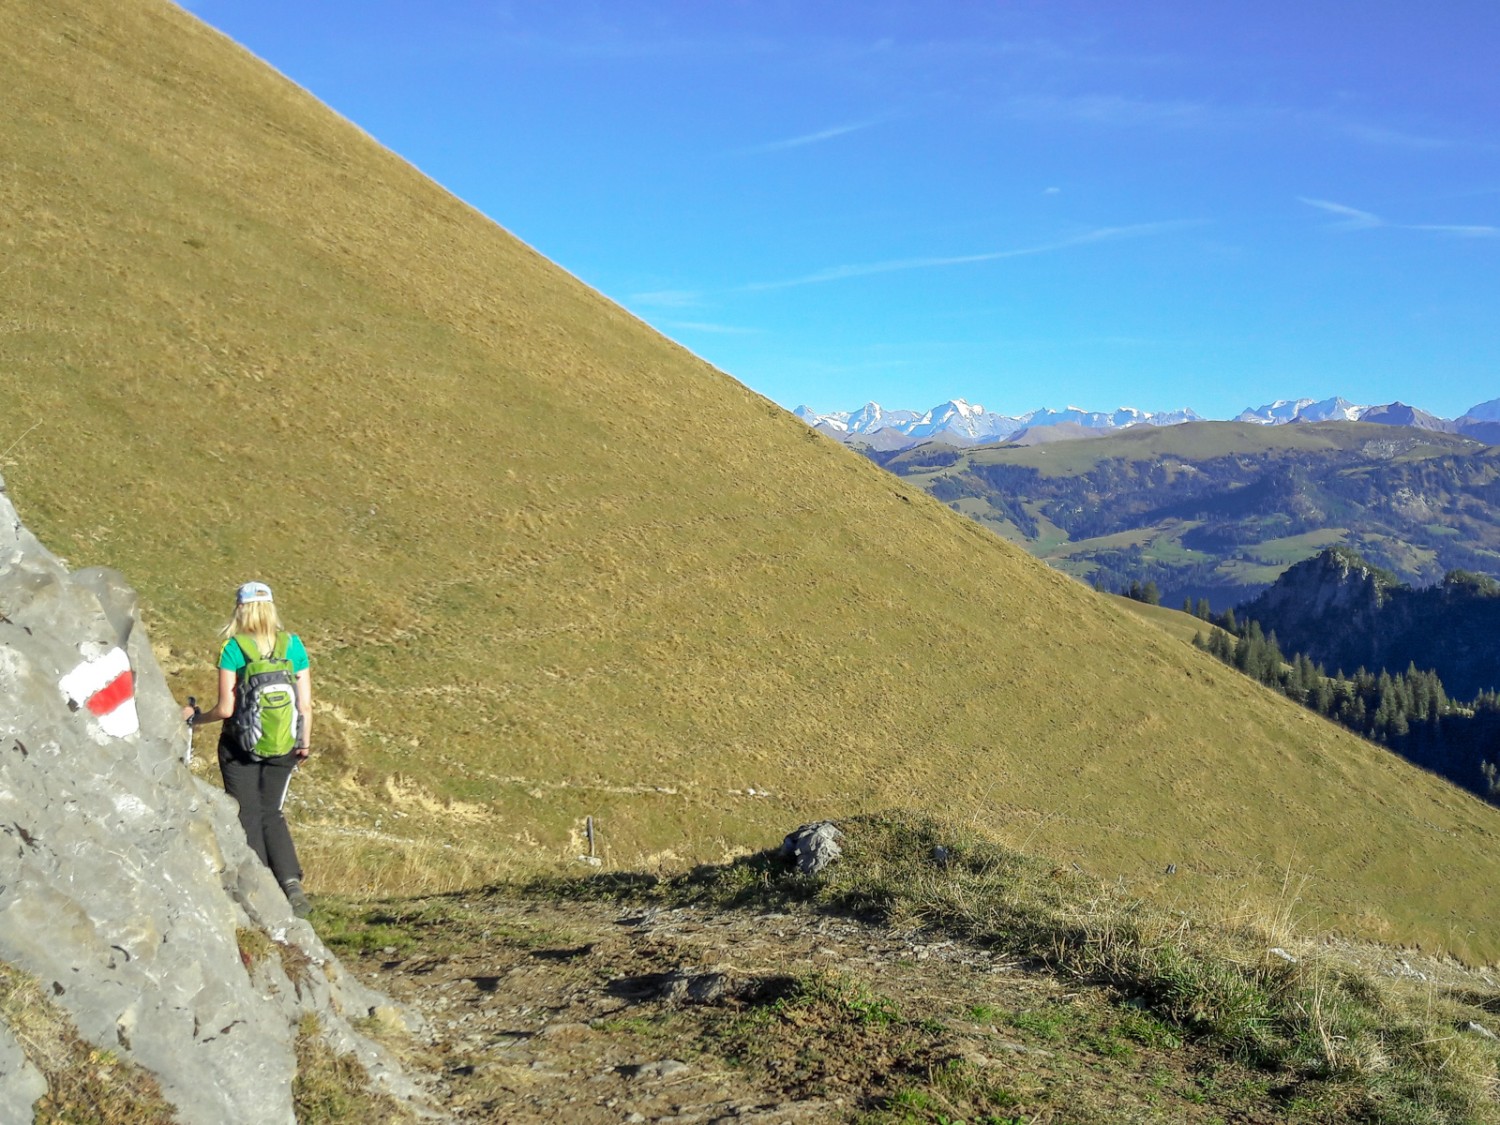 En descendant, on profite d’un panorama fantastique avec, à l’arrière-plan, l’Eiger, le Mönch et la Jungfrau. Photo: Patrick Salzmann